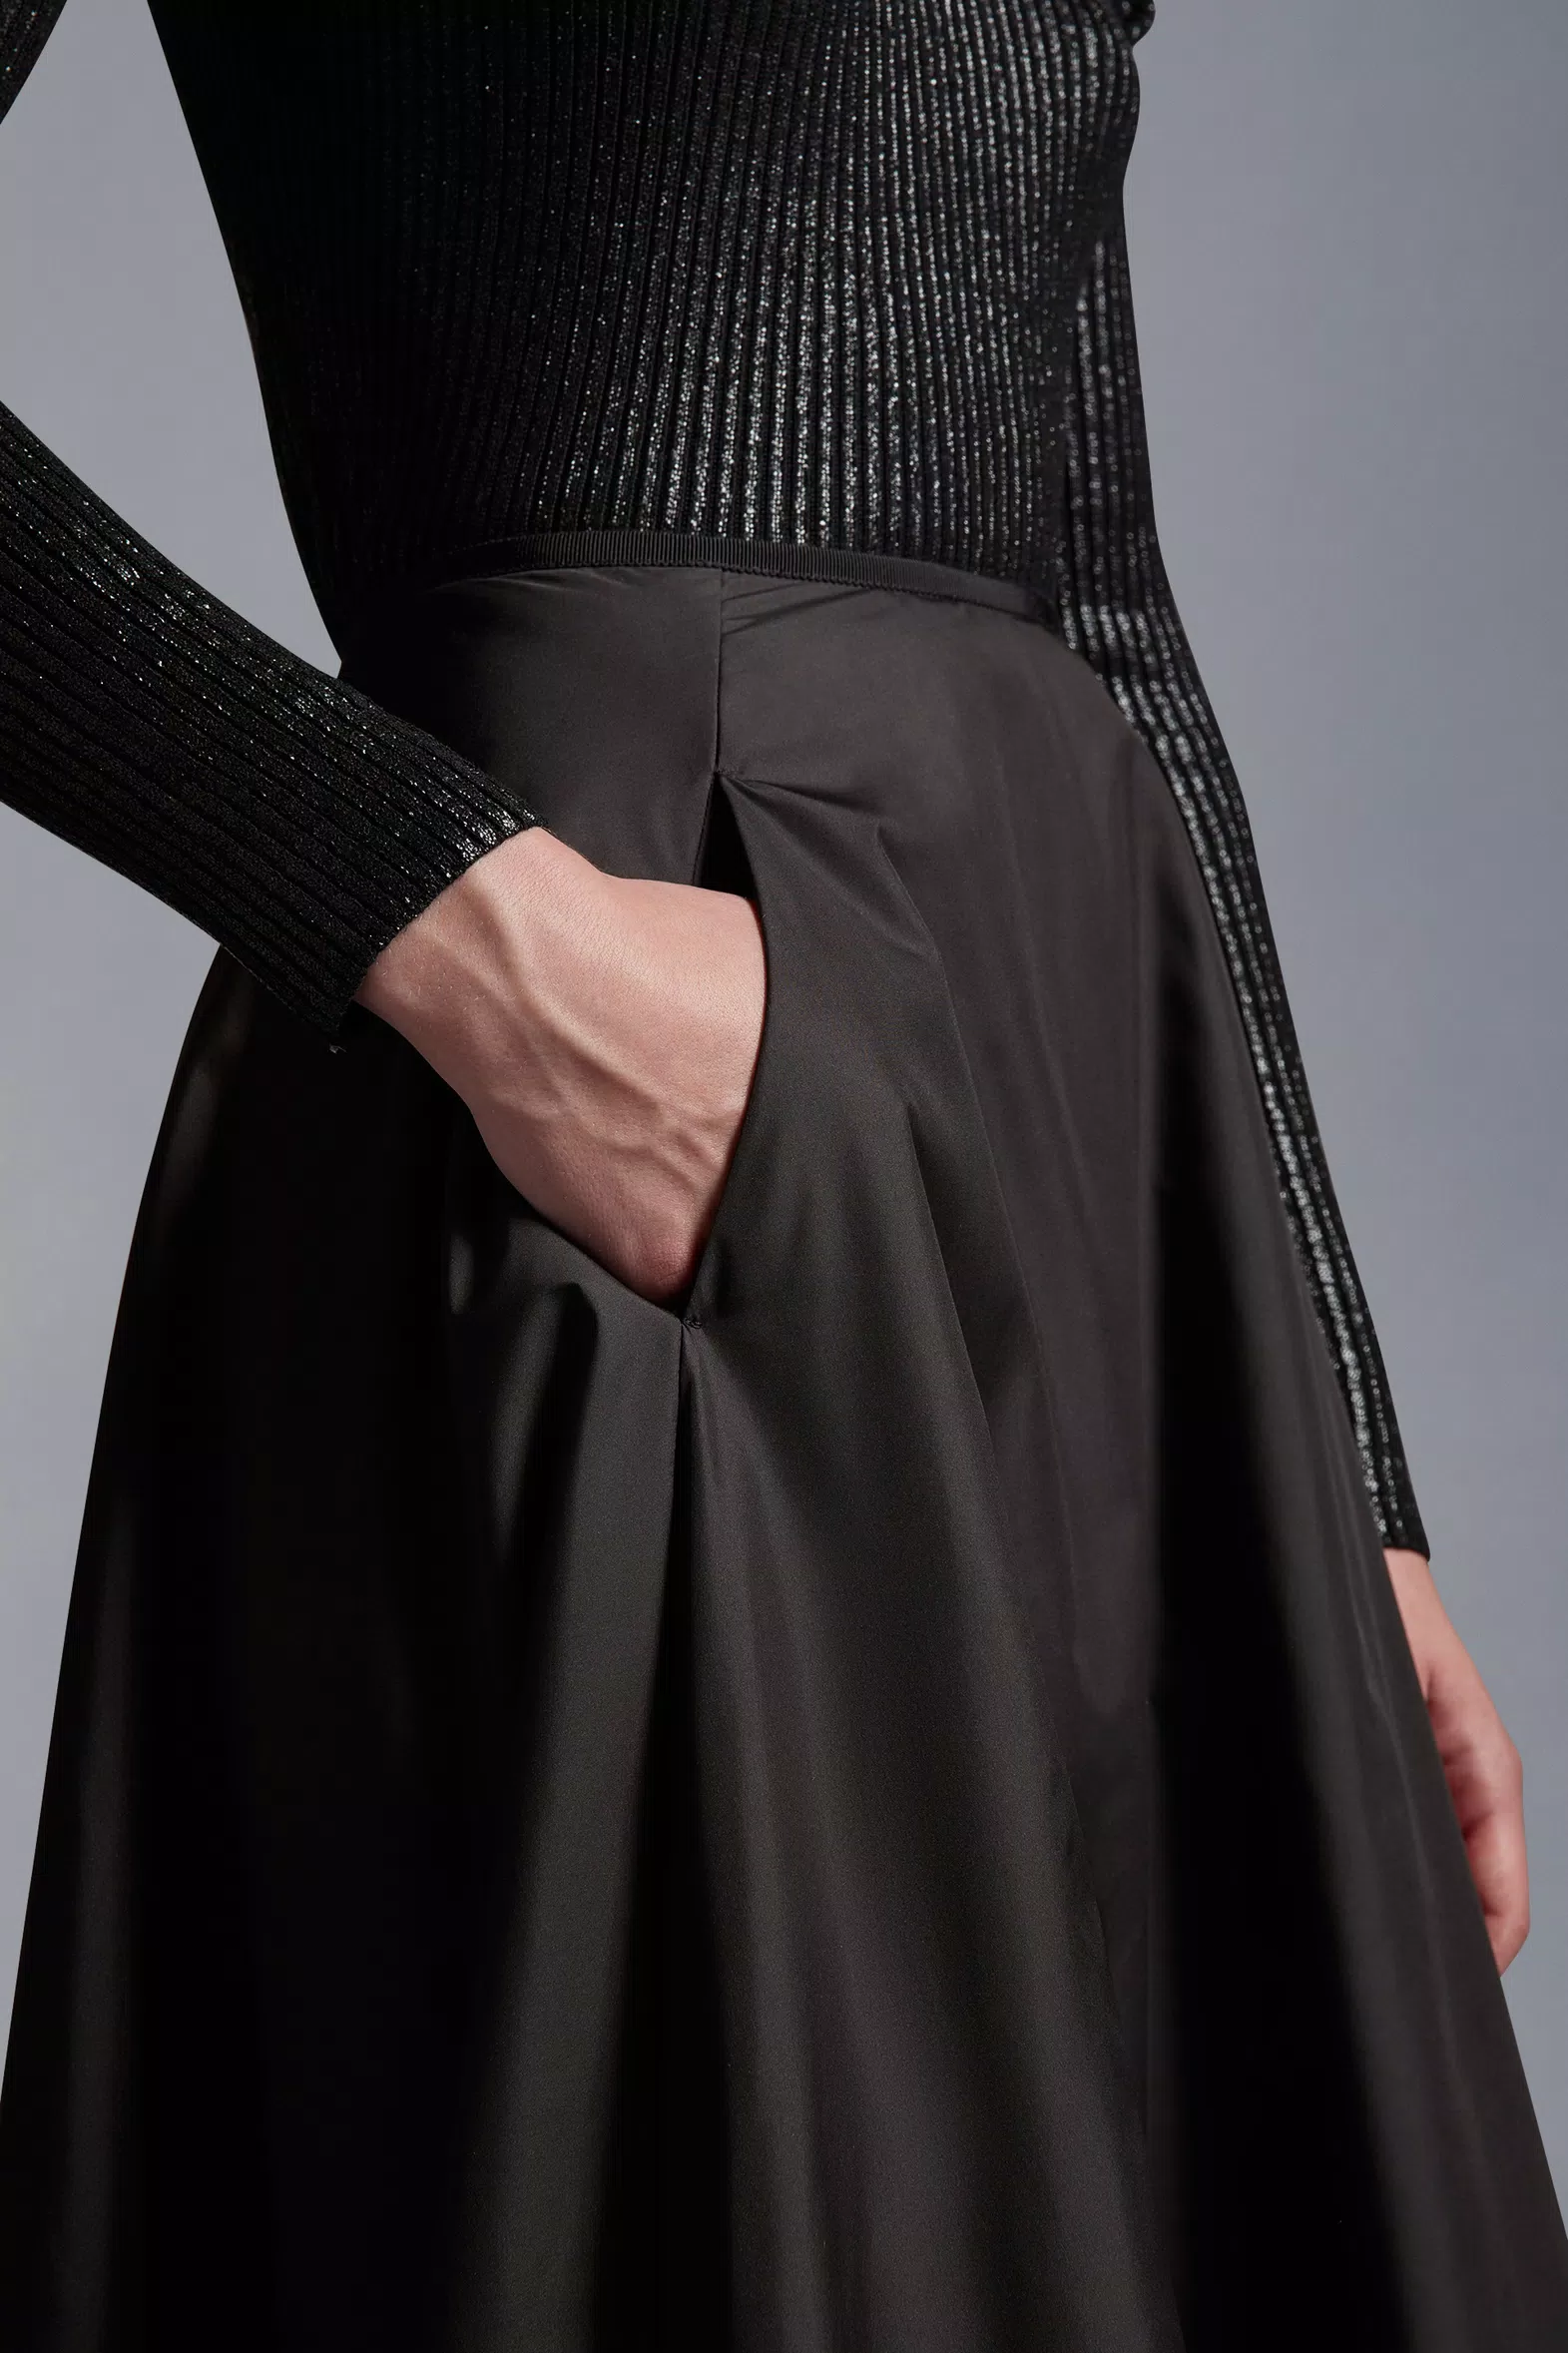 Black Taffeta Midi Skirt - Skirts for Women | Moncler US